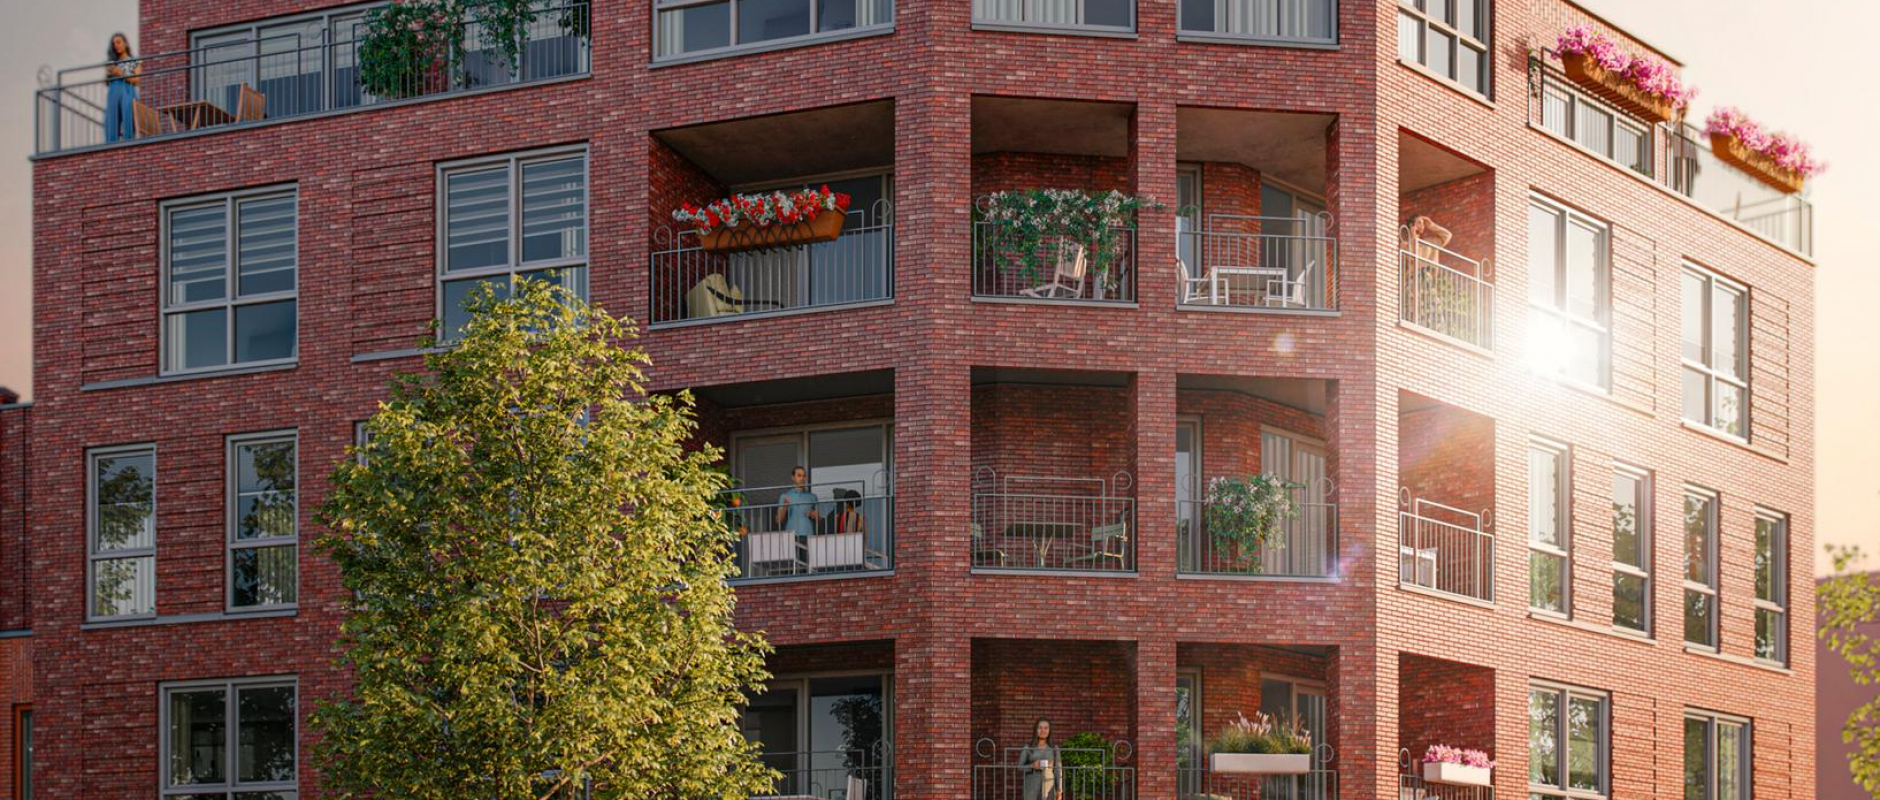 Woning te koop aan de Bataviahaven Stadsfront - Appartementen 0ong te Lelystad